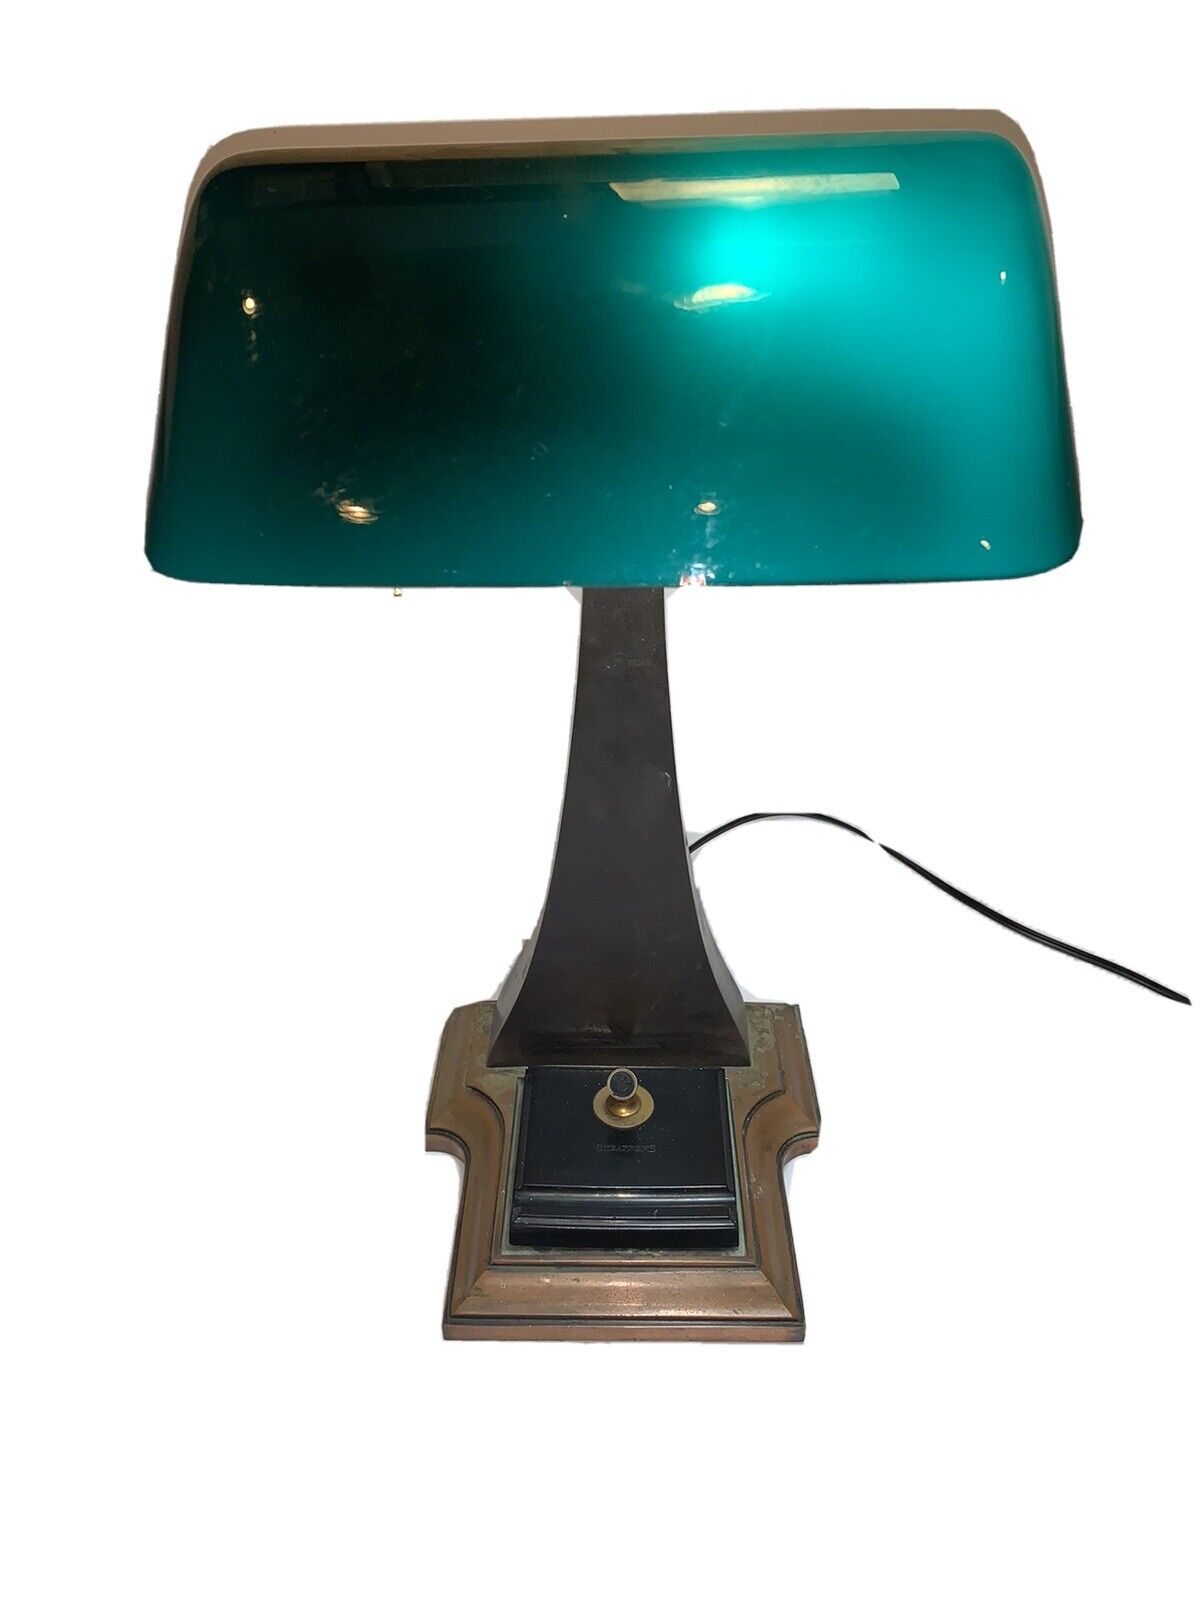 RARE Antique Vintage 1917 Amronlite Bankers Desk Lamp Patina Rewired Works Prop